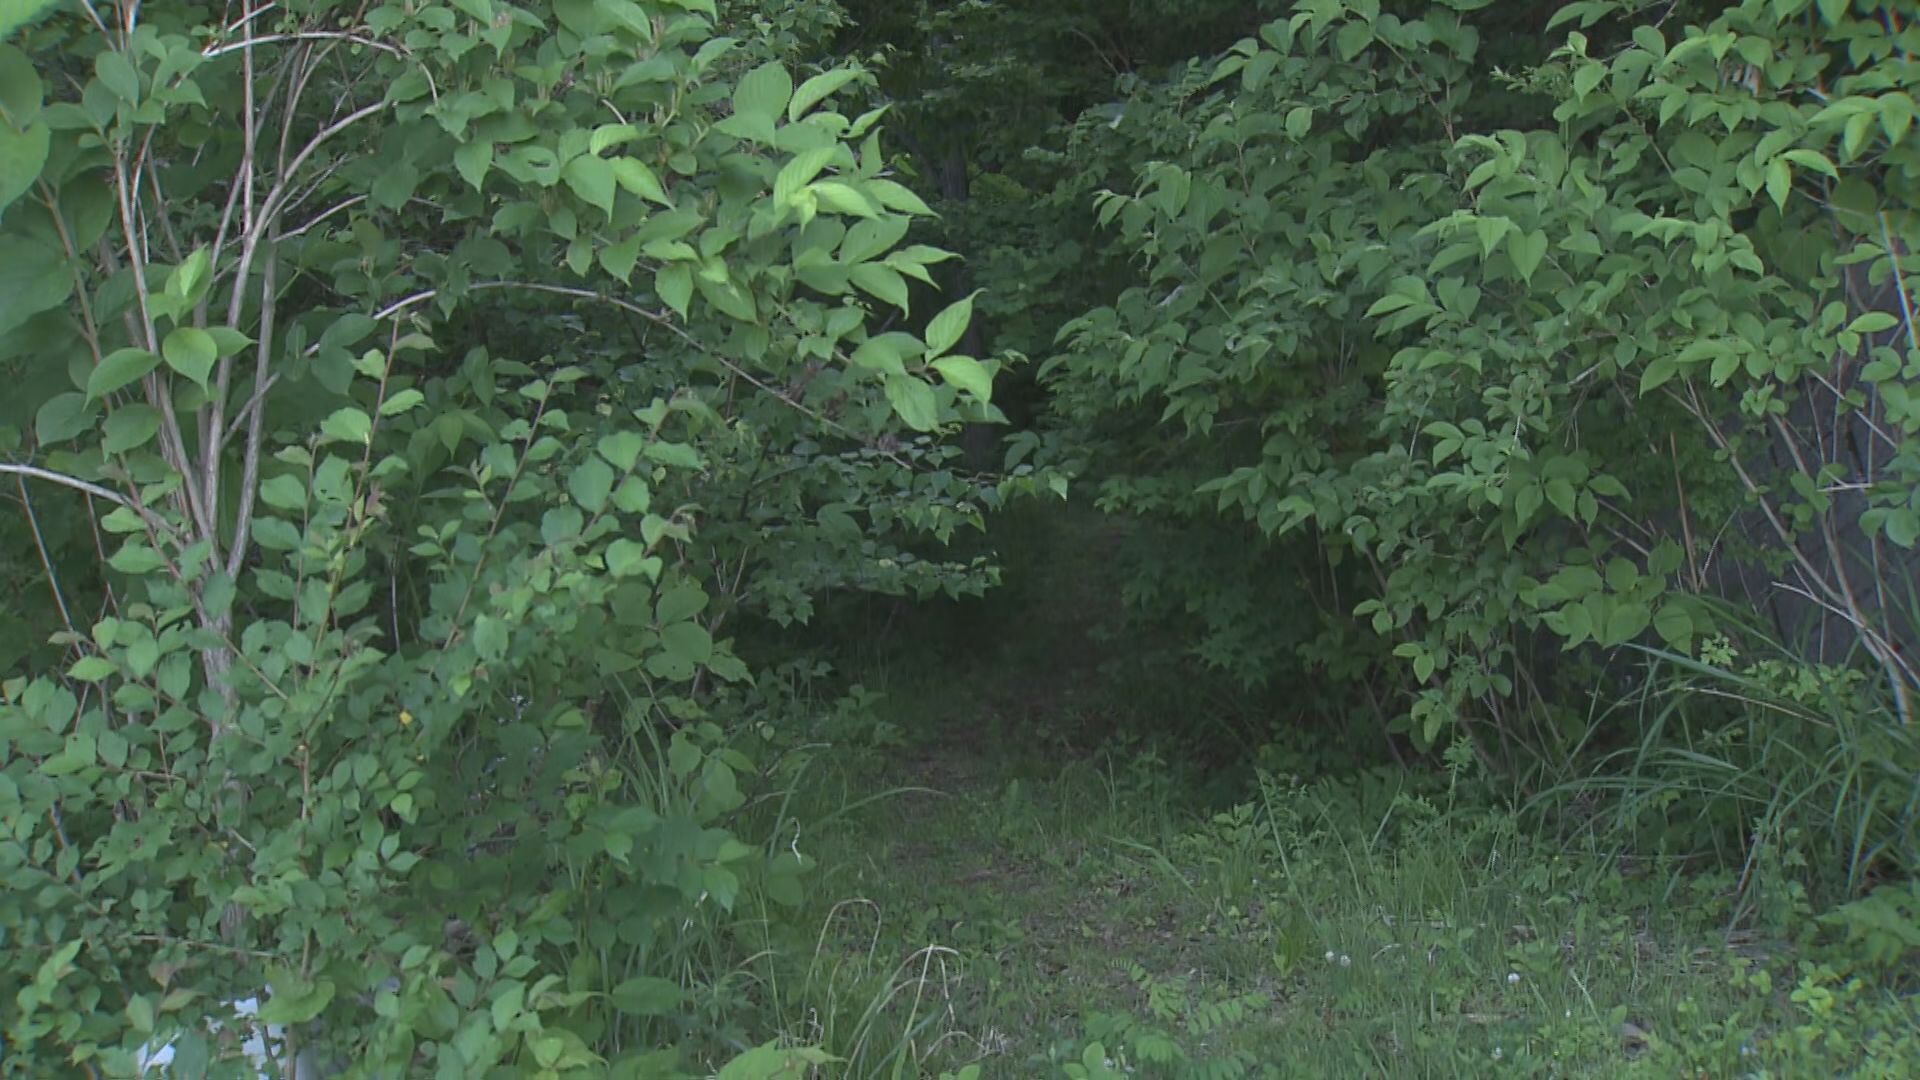 クマに襲われた可能性 長野県の山林で糸魚川市の会社員男性(58)遺体で発見  【長野・信濃町】